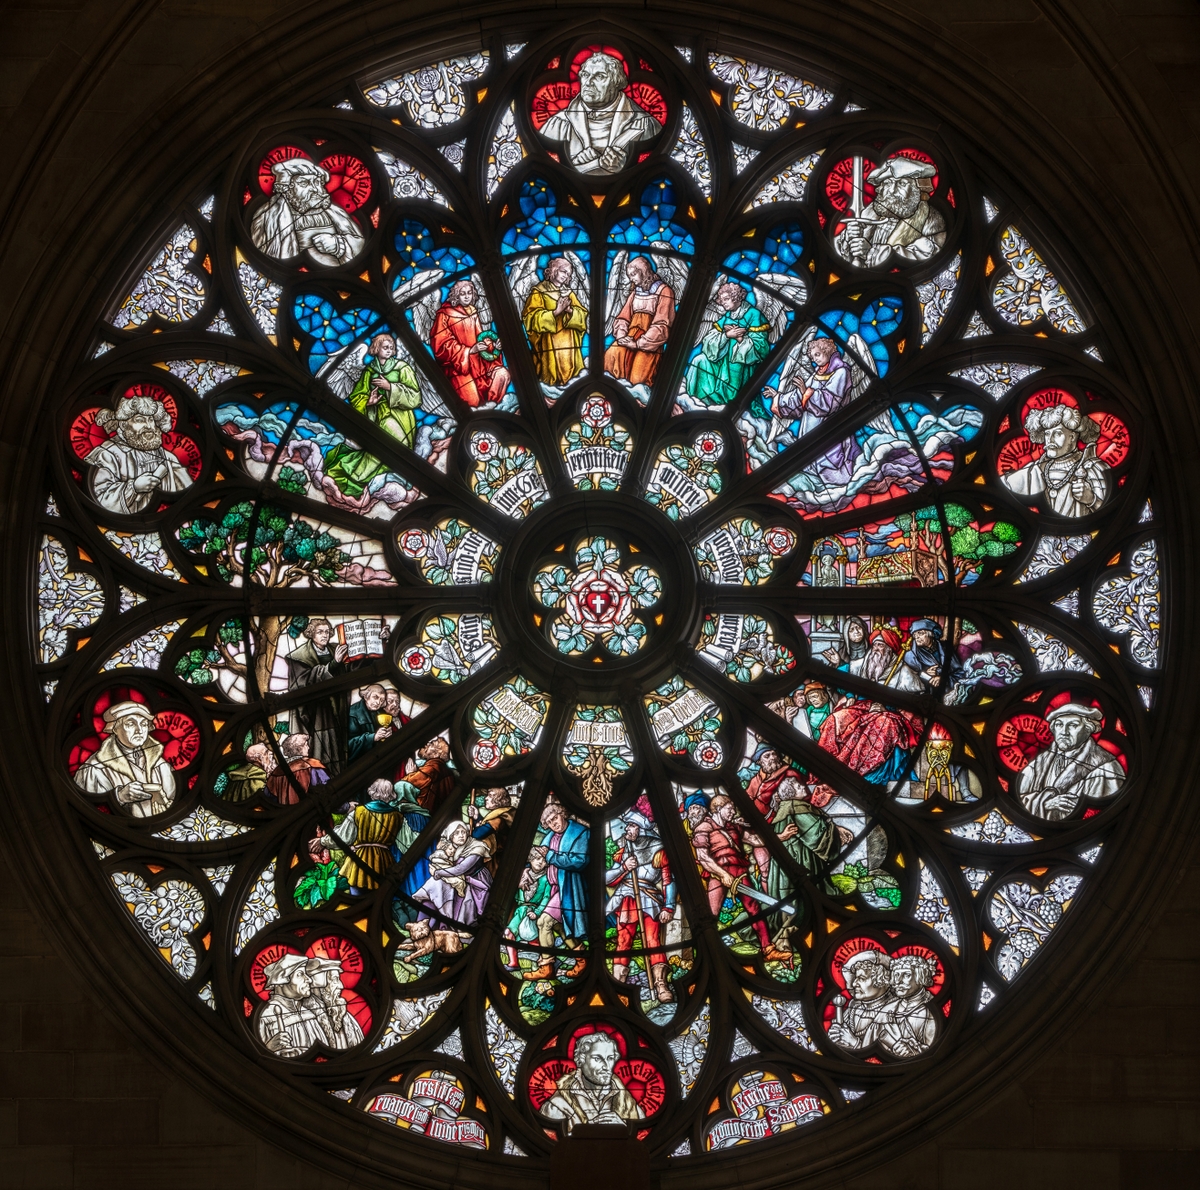 La rosace du transept à gauche © Jakob Bradl - licence [CC BY-SA 4.0] from Wikimedia Commons